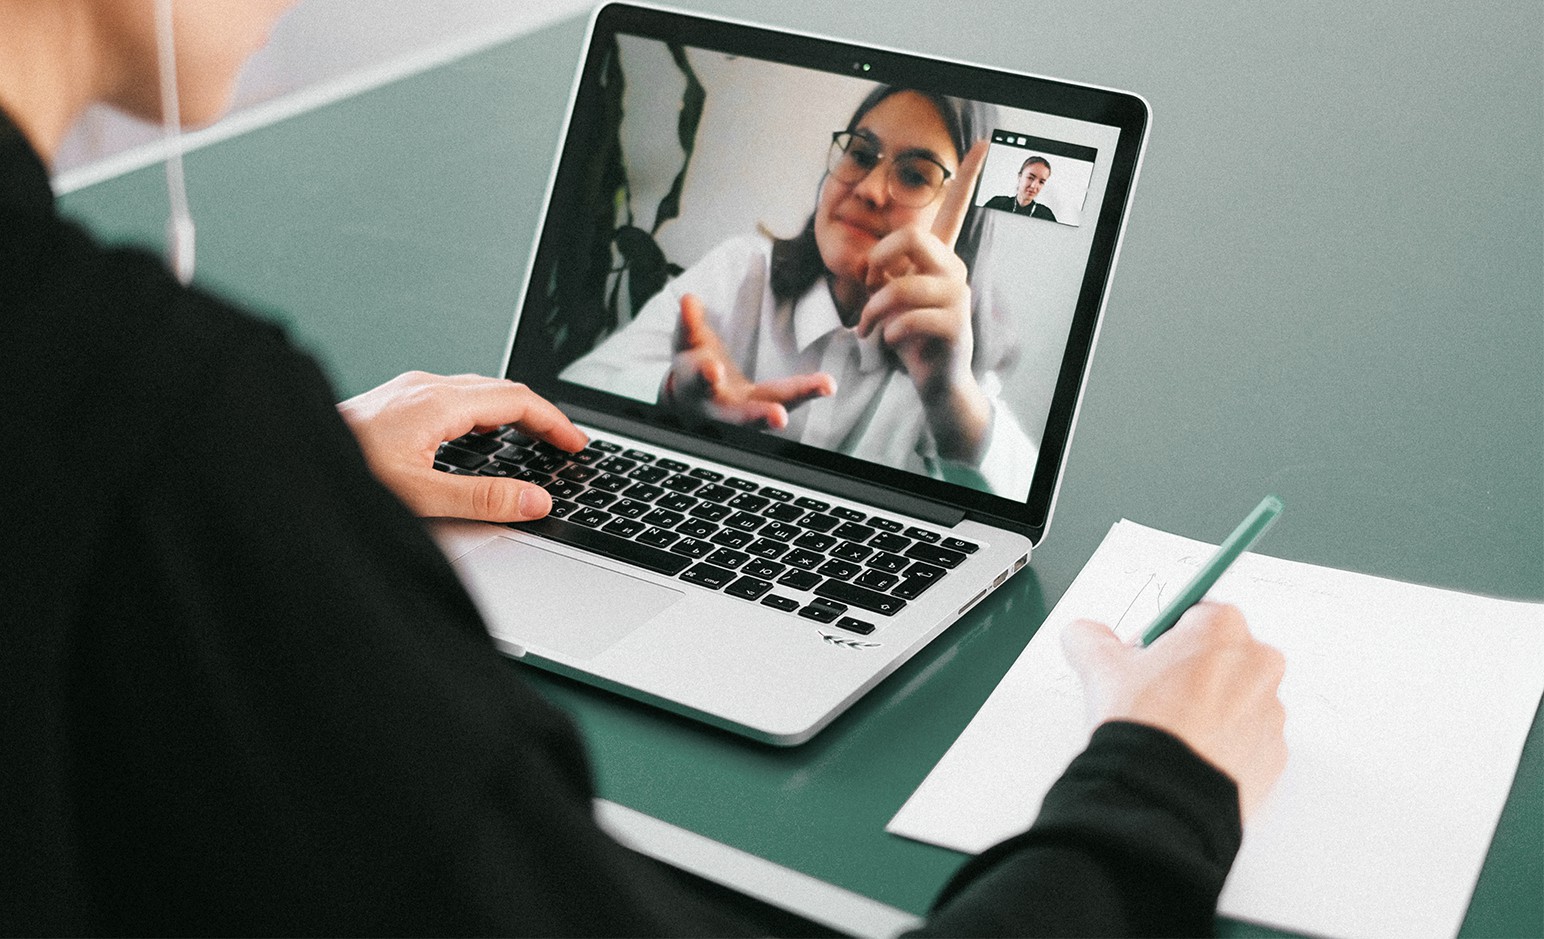 - Schulterblick in eine Remote-Interview-Session: Eine junge Frau ist auf dem Bildschirm eines Laptops zu sehen, während die Interviewende Person auf einem Notizblock mitschreibt.